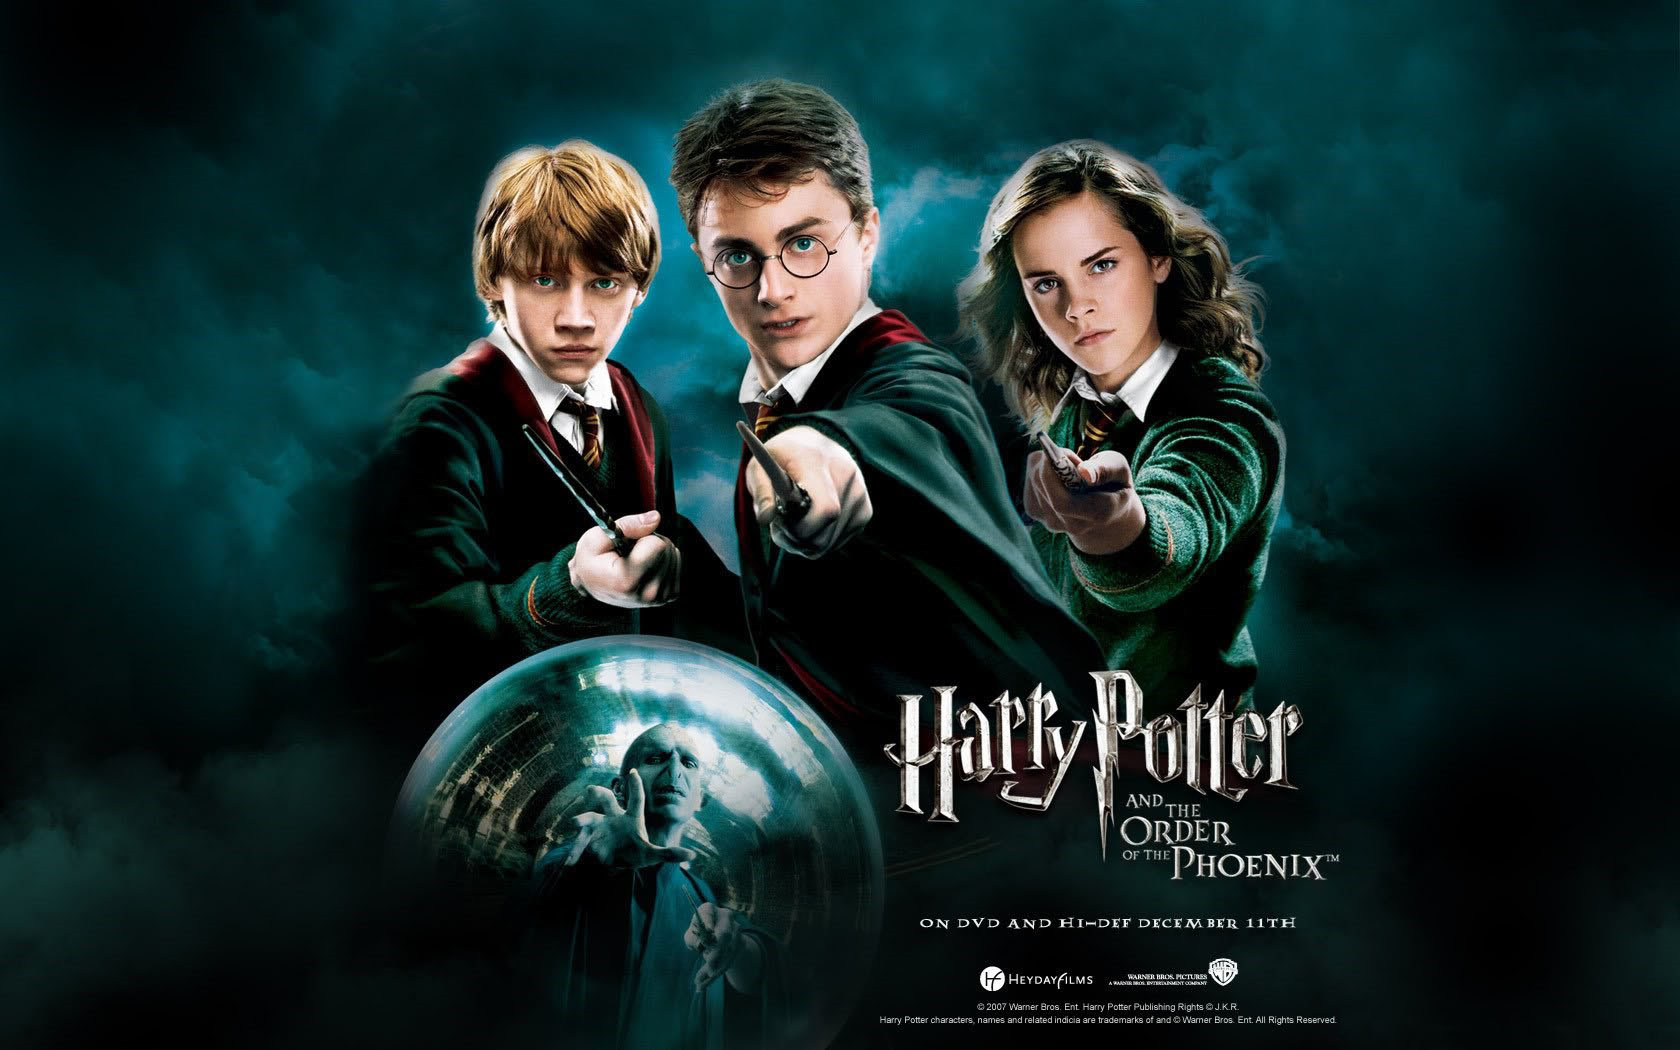 Hình Ảnh Harry Potter Đẹp, Chất Lượng Cao Dành Cho Các Fan